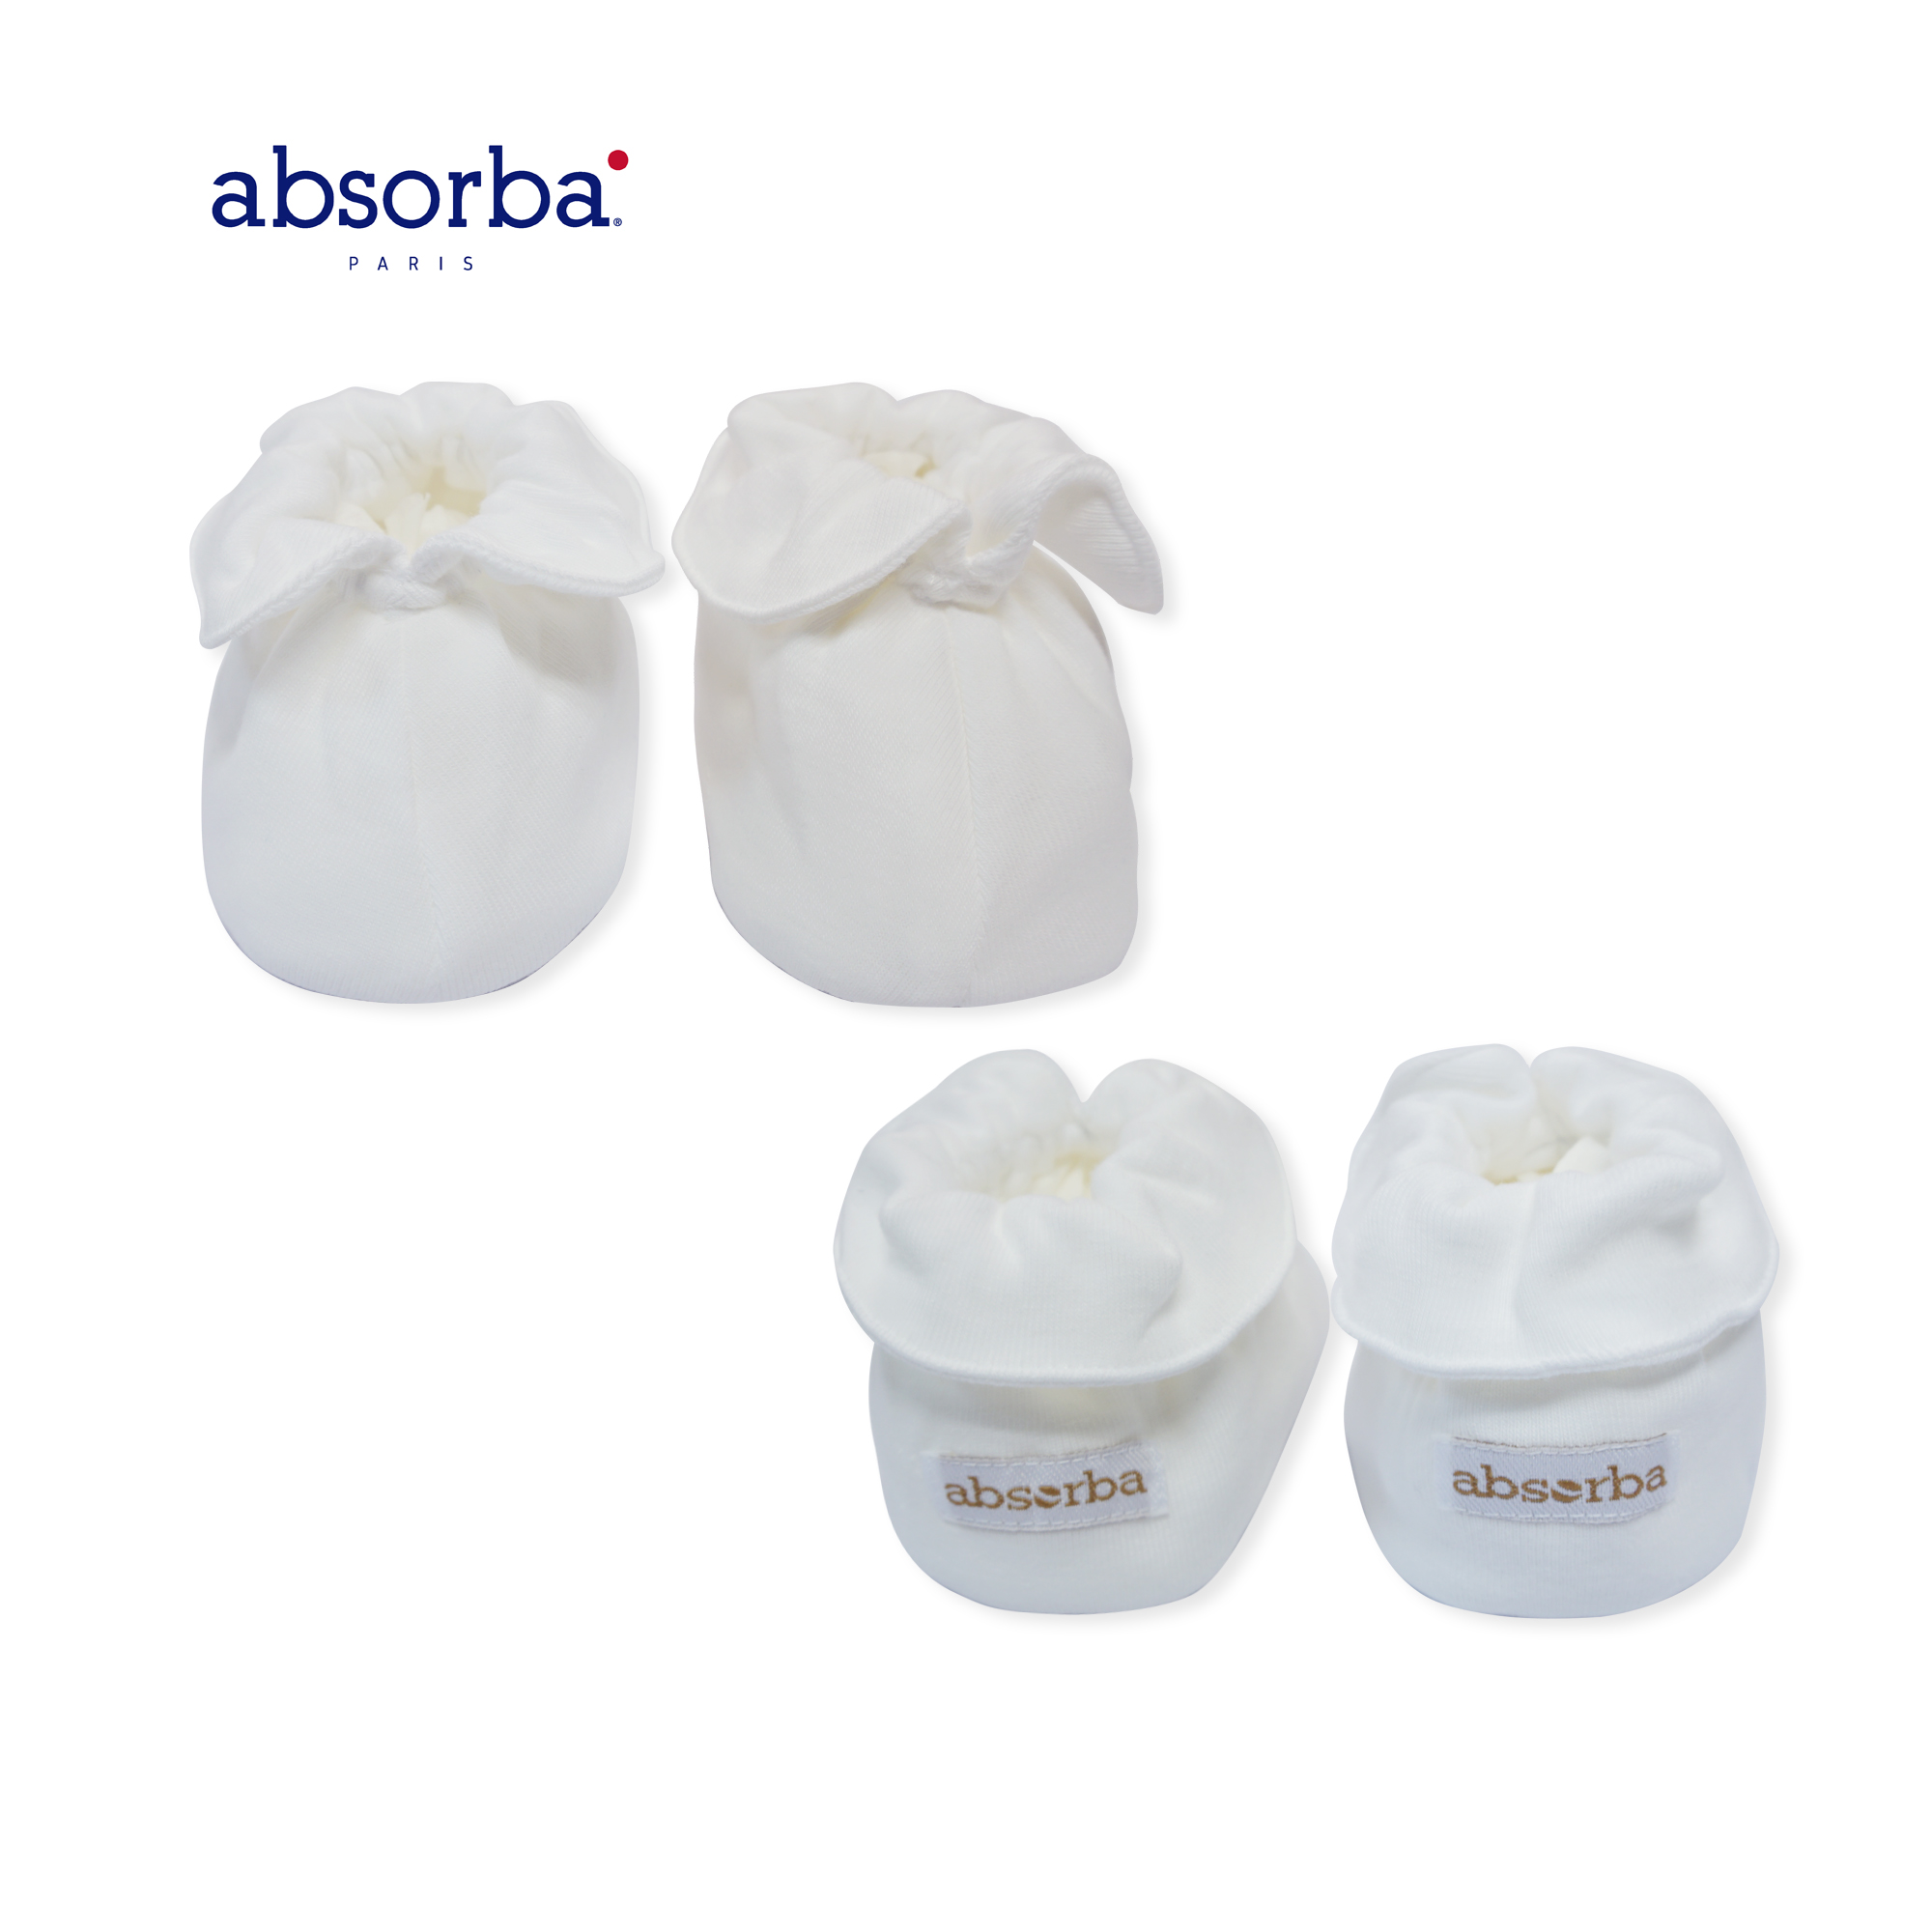 absorba(แอ็บซอร์บา)ถุงเท้าเด็กอ่อน เคลือบคอลลาเจน นุ่ม สวมใส่สบาย ระบายอากาศได้ดี สำหรับเด็กแรกเกิดขึ้นไป มีให้เลือก 3 สี แพ็ค 1 คู่ -R21SRUAO01